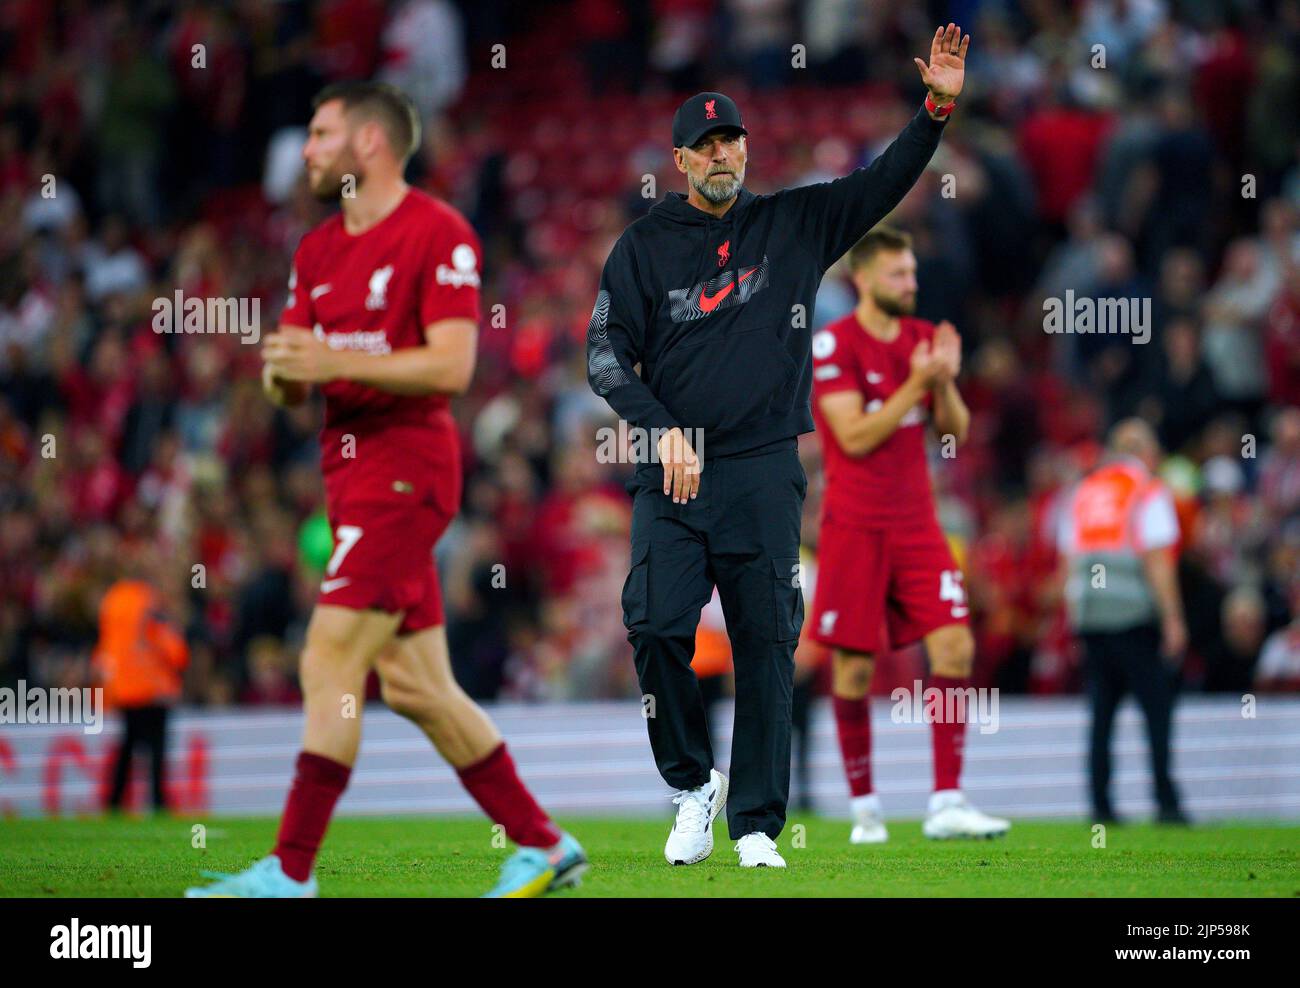 El entrenador del Liverpool, Jurgen Klopp, se dirige a los aficionados al final del partido de la Premier League en Anfield, Liverpool. Fecha de la foto: Lunes 15 de agosto de 2022. Foto de stock